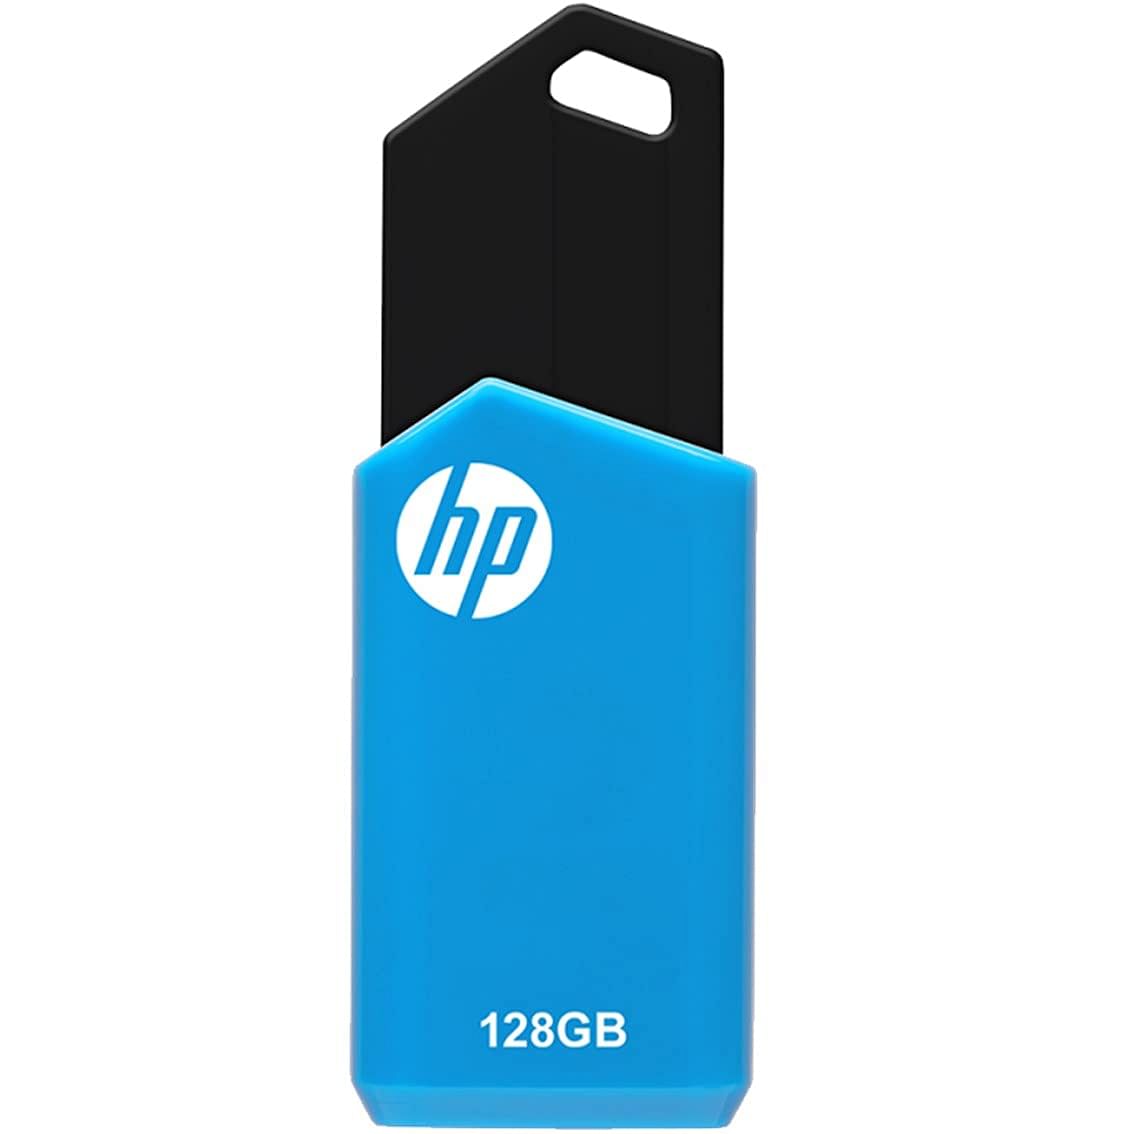 HP 128GB v150w USB 2.0 Flash Drive